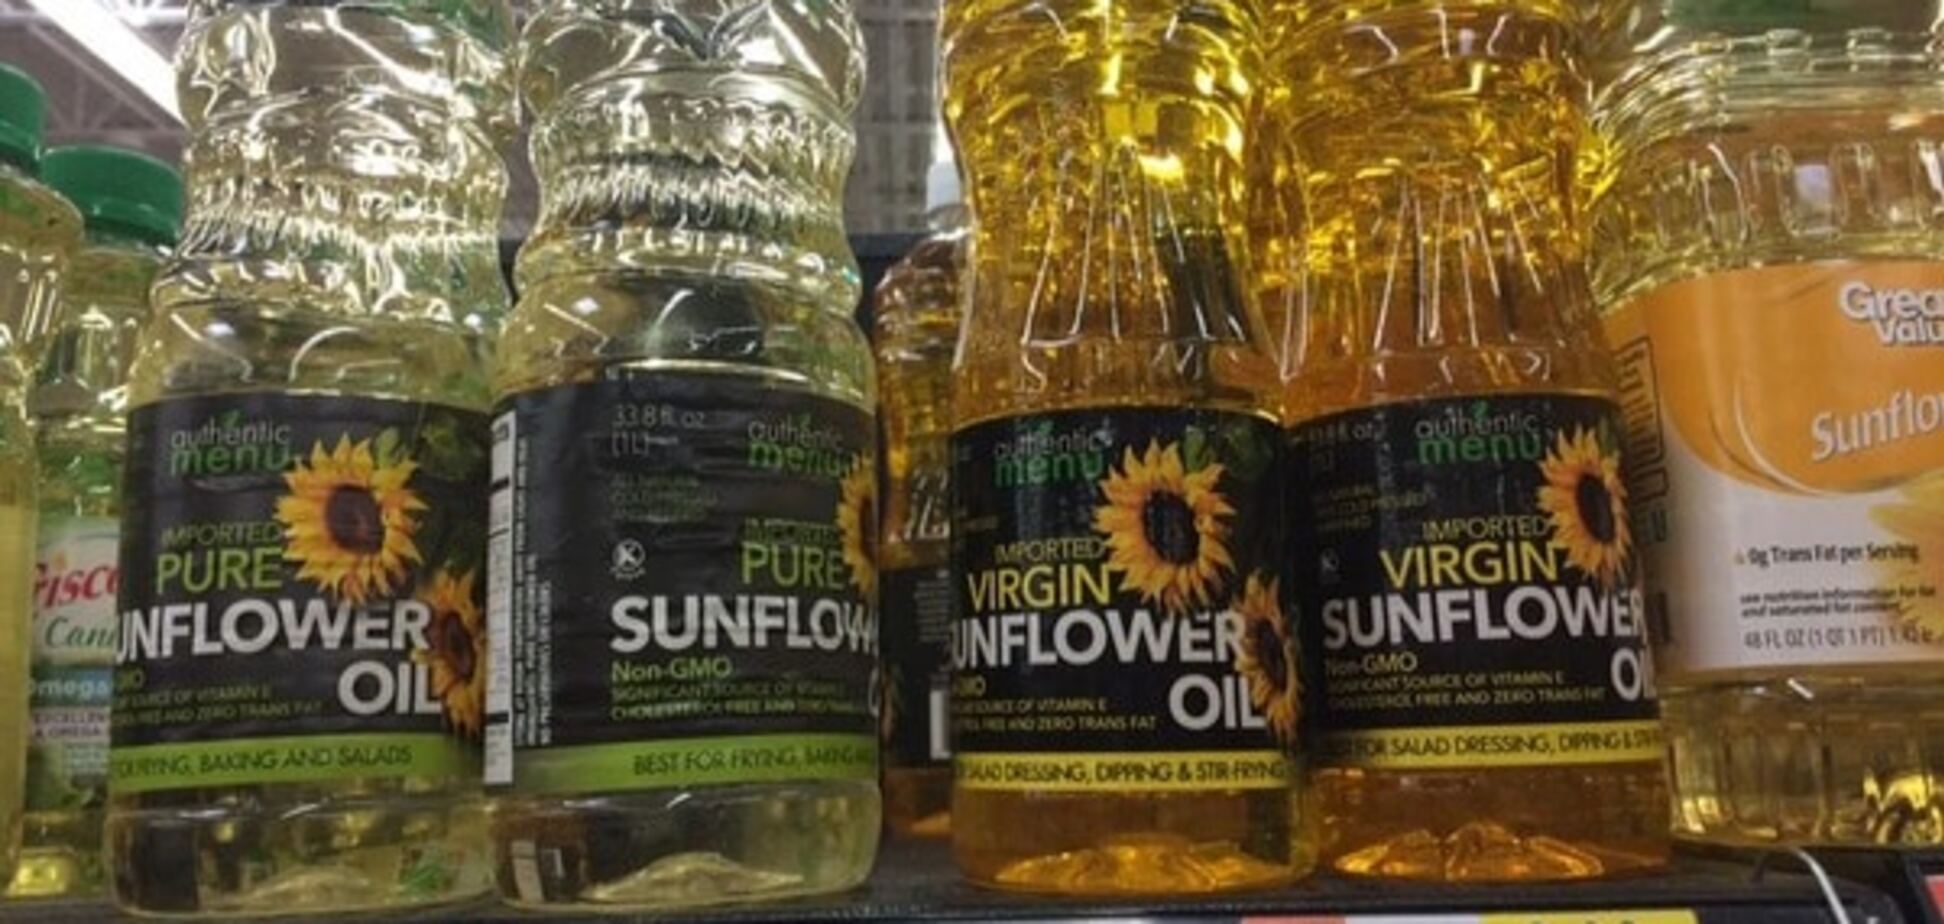 Українську соняшникову олію продають у США по $4 за літр: фотофакт